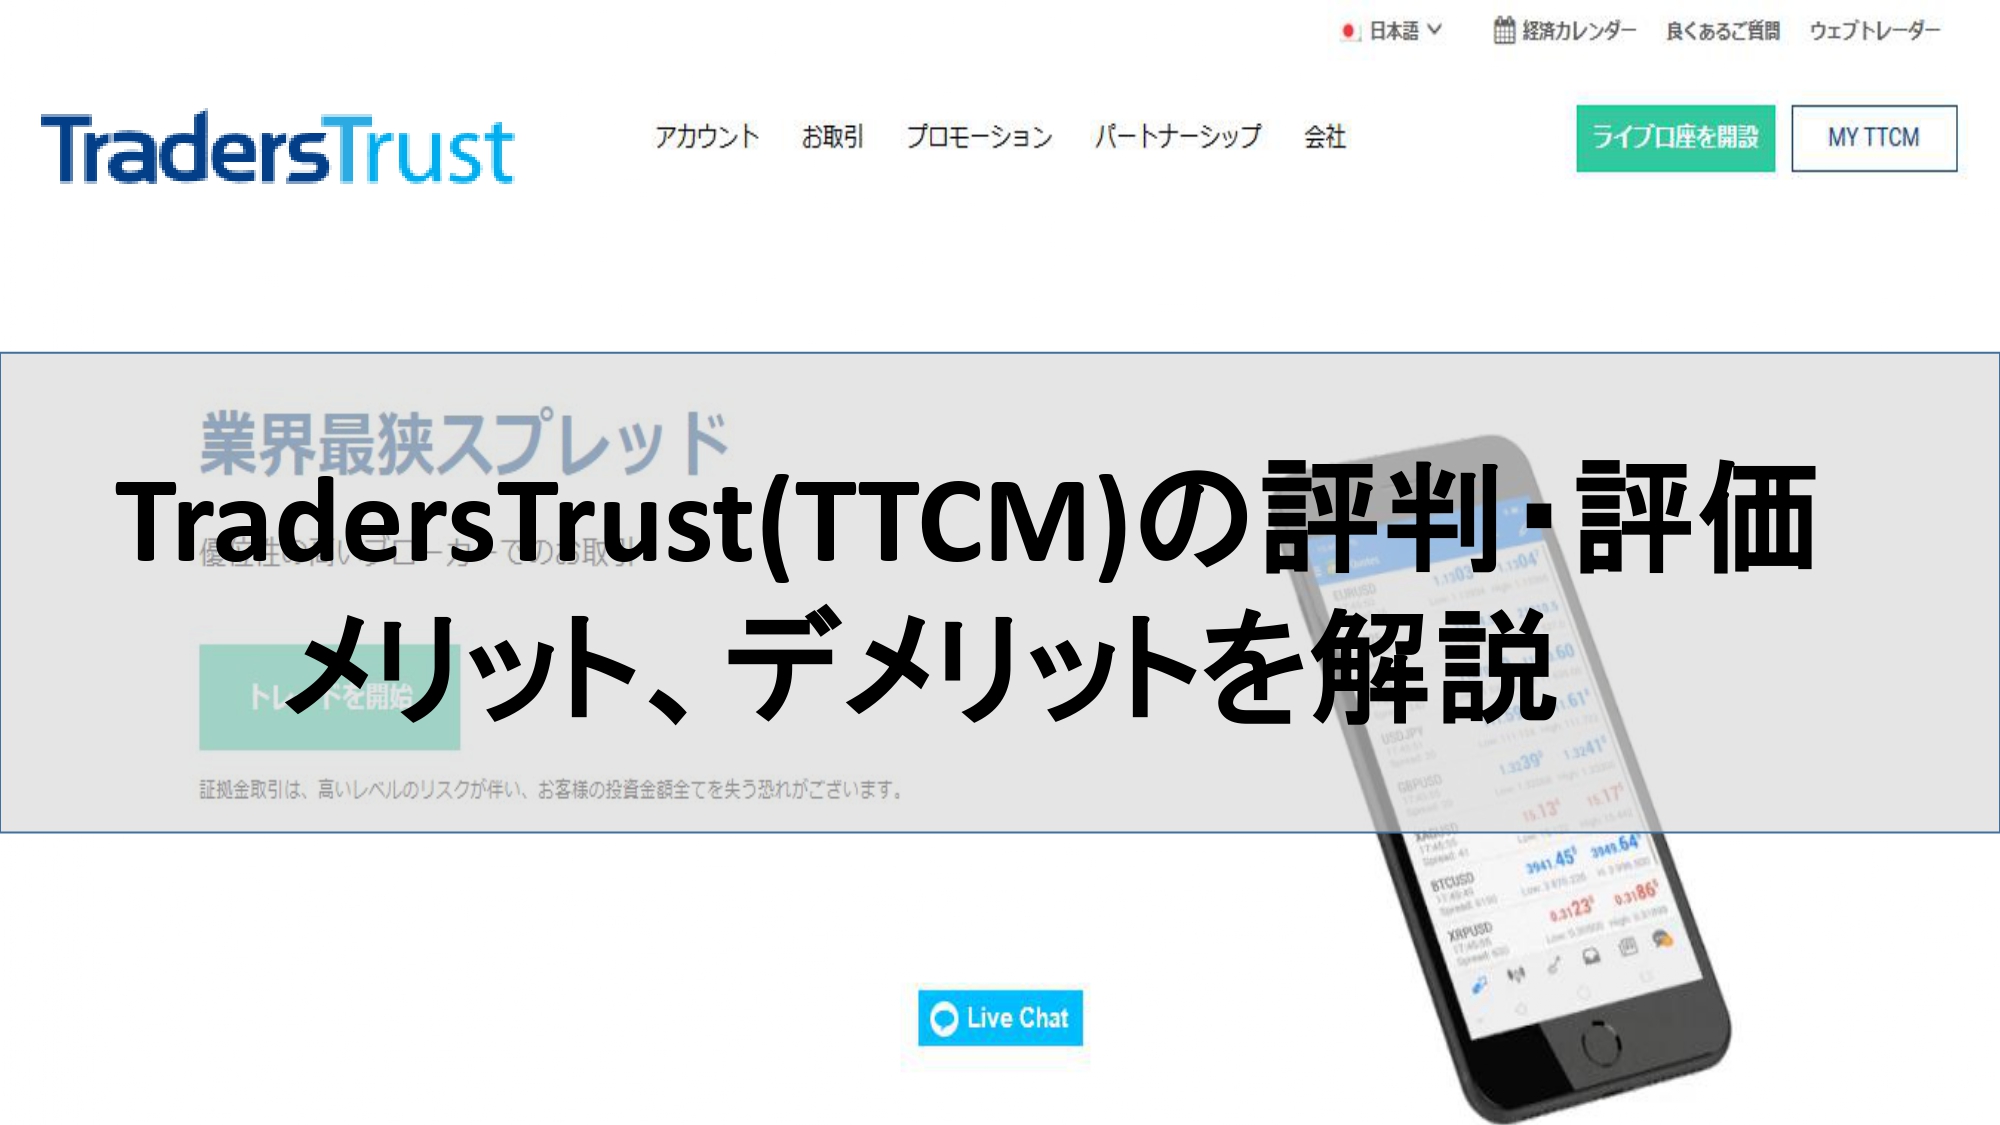 TradersTrust(TTCM)の評判・評価